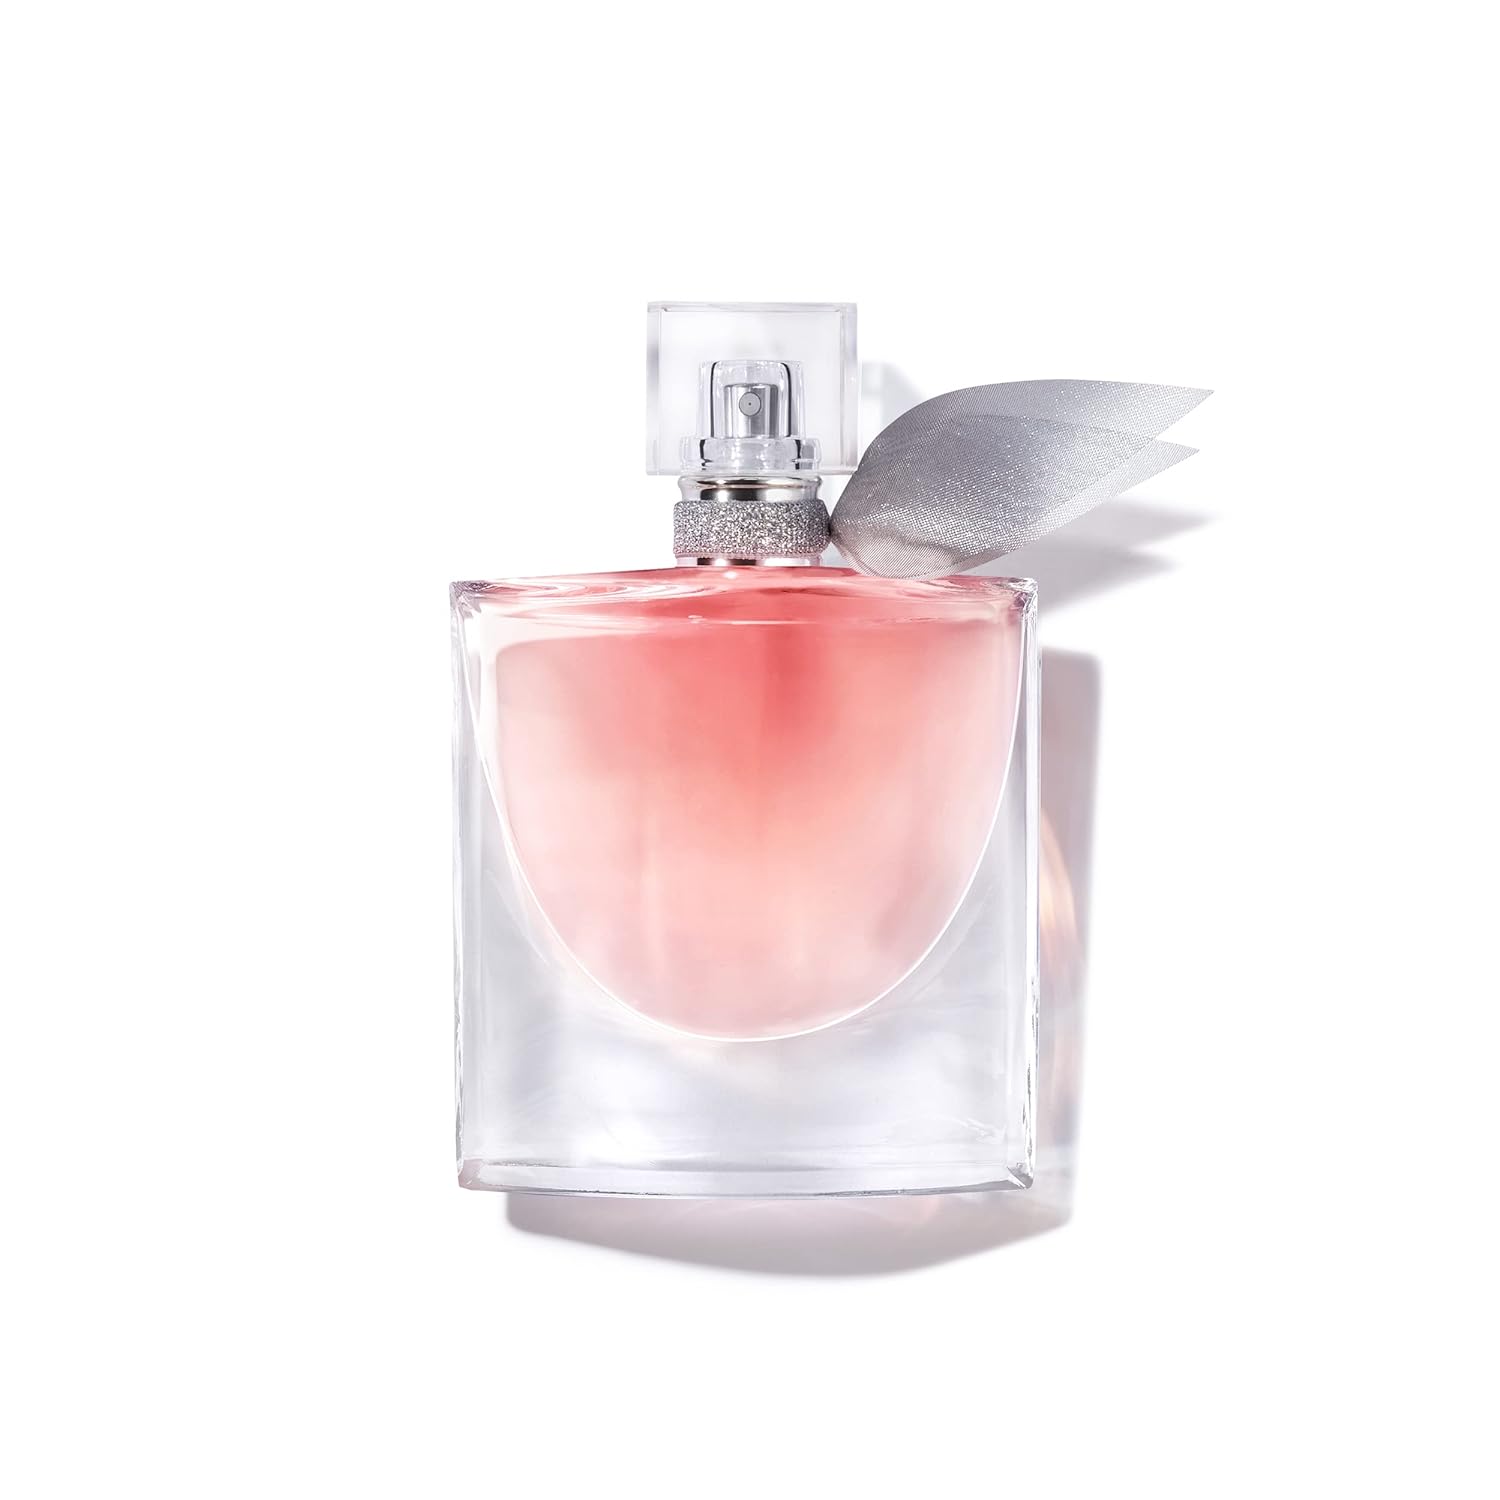 Lancme La Vie Est Belle Eaude Parfum - Long Lasting Fragrance with Notes of Iris, Earthy Patchouli, Warm Vanilla & Spun Sugar - Floral & Sweet Women' Perfume